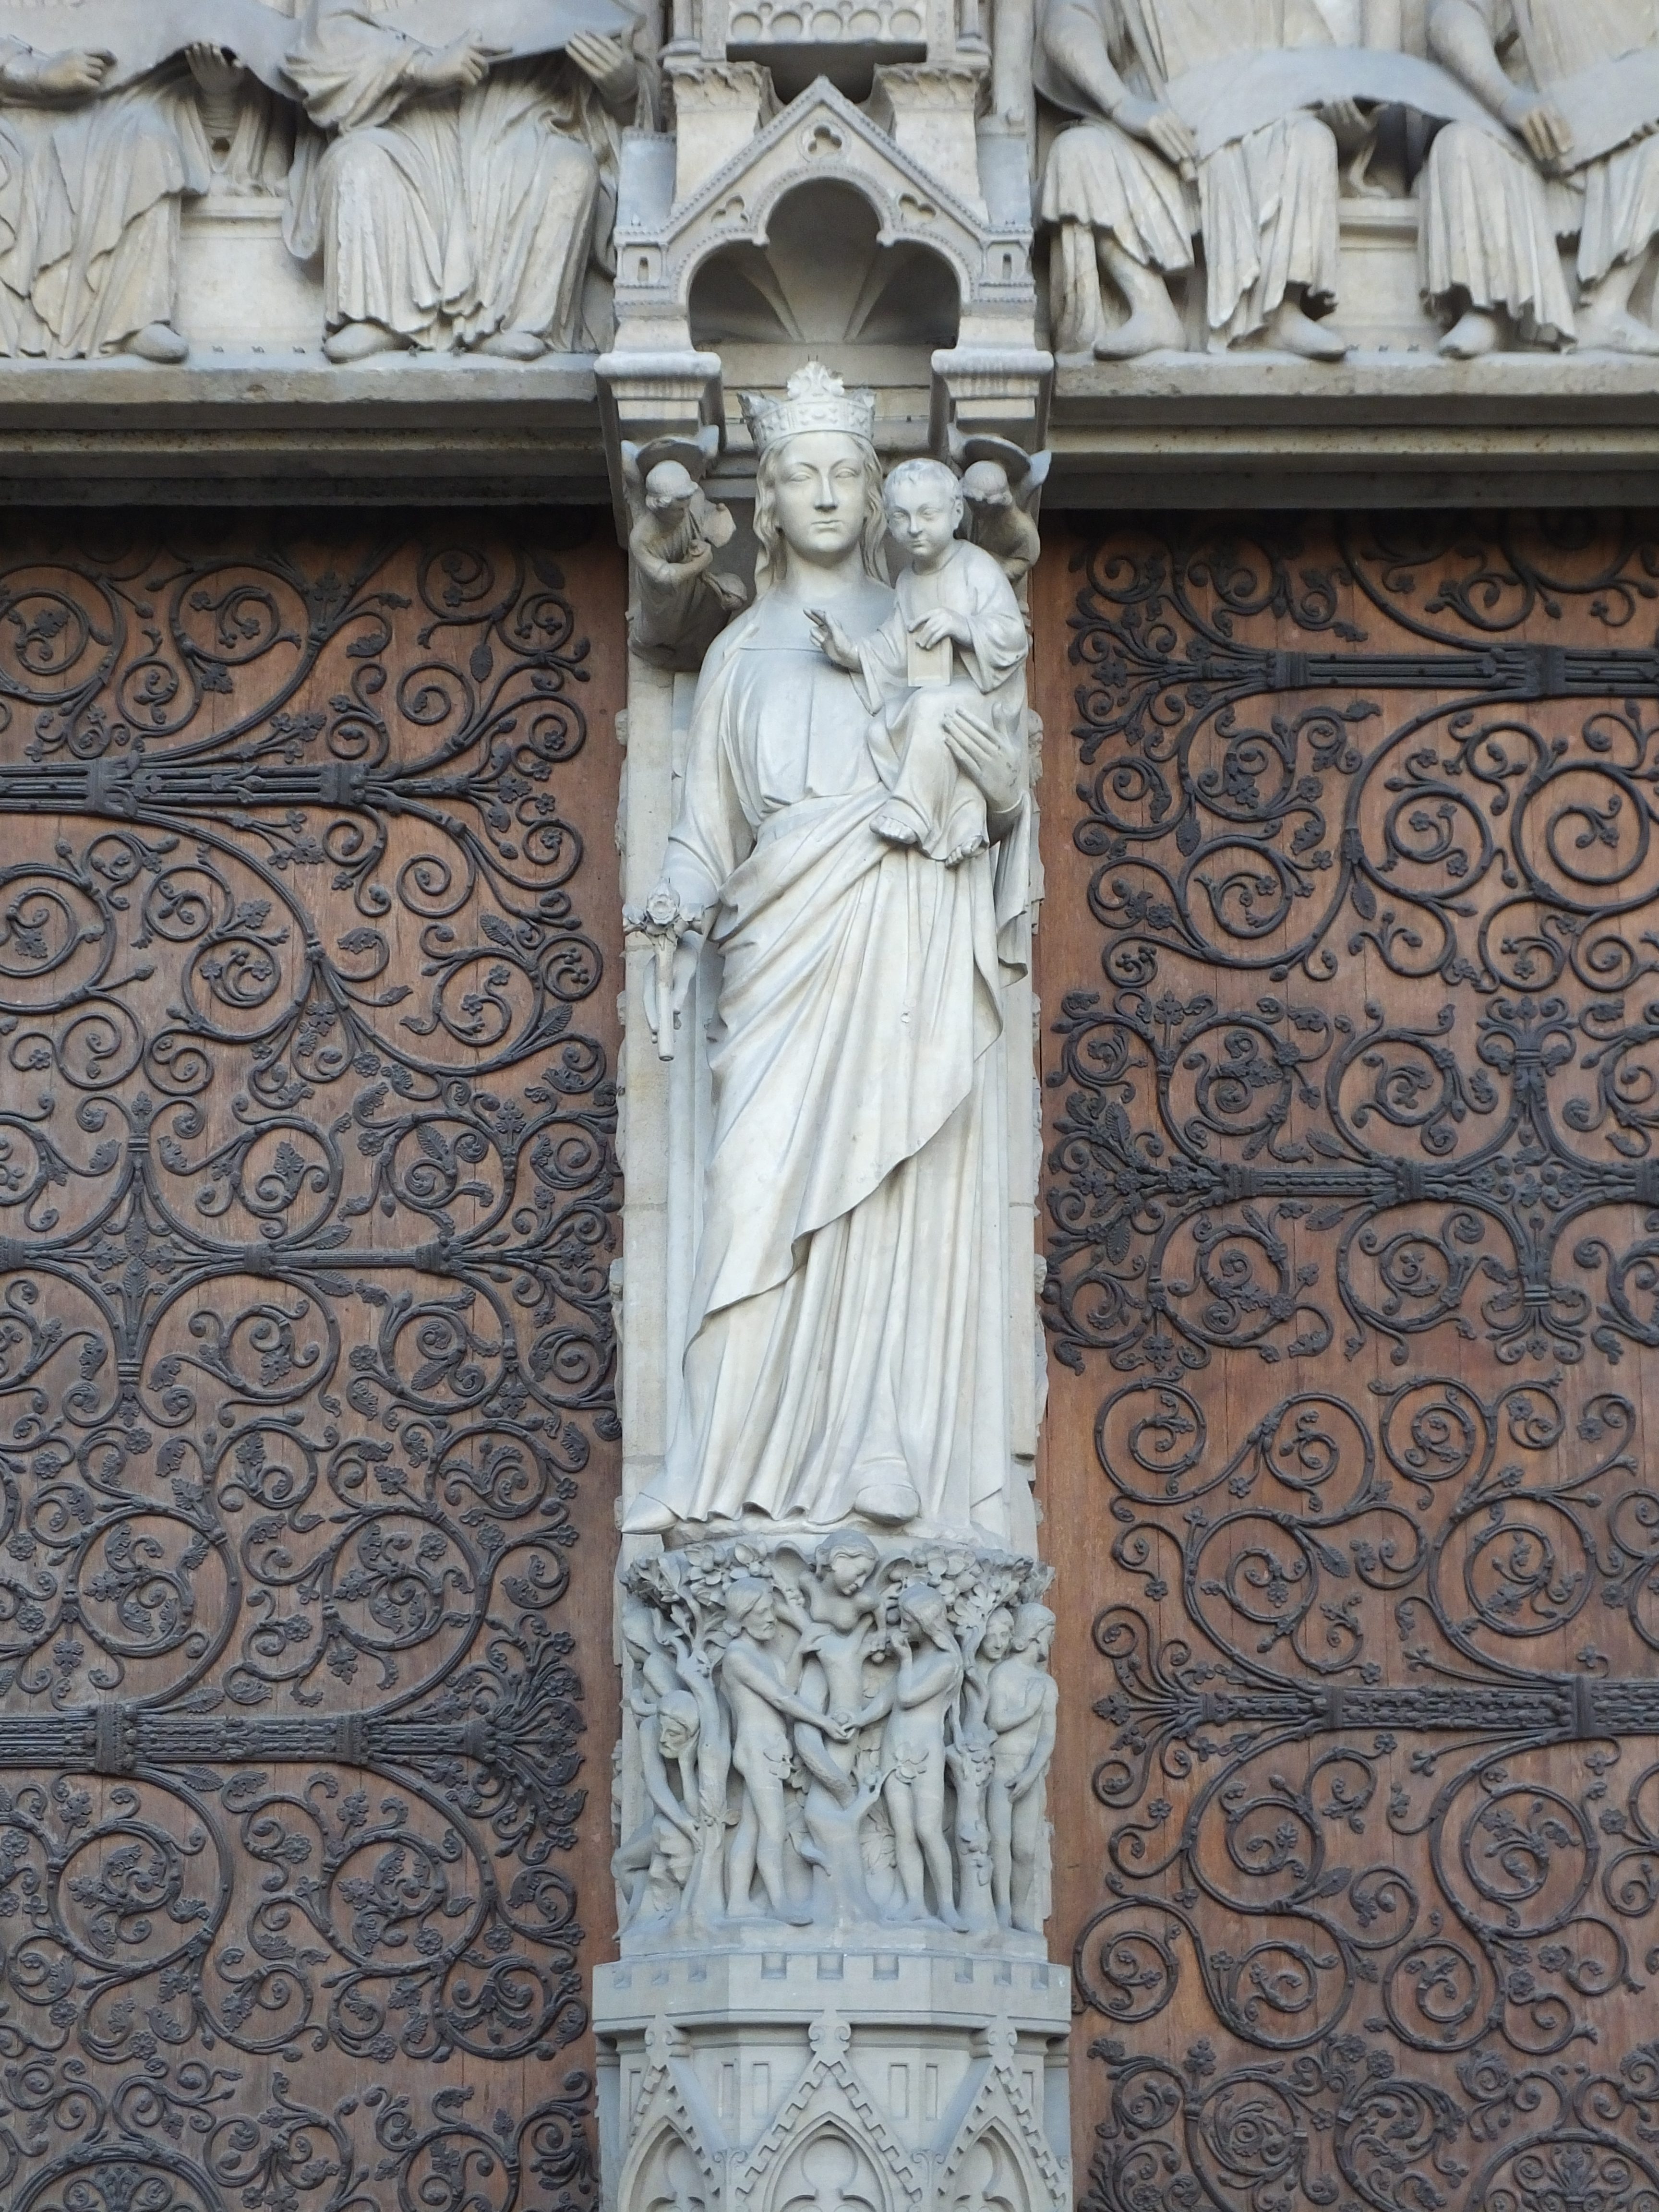 The doors of Notre Dame